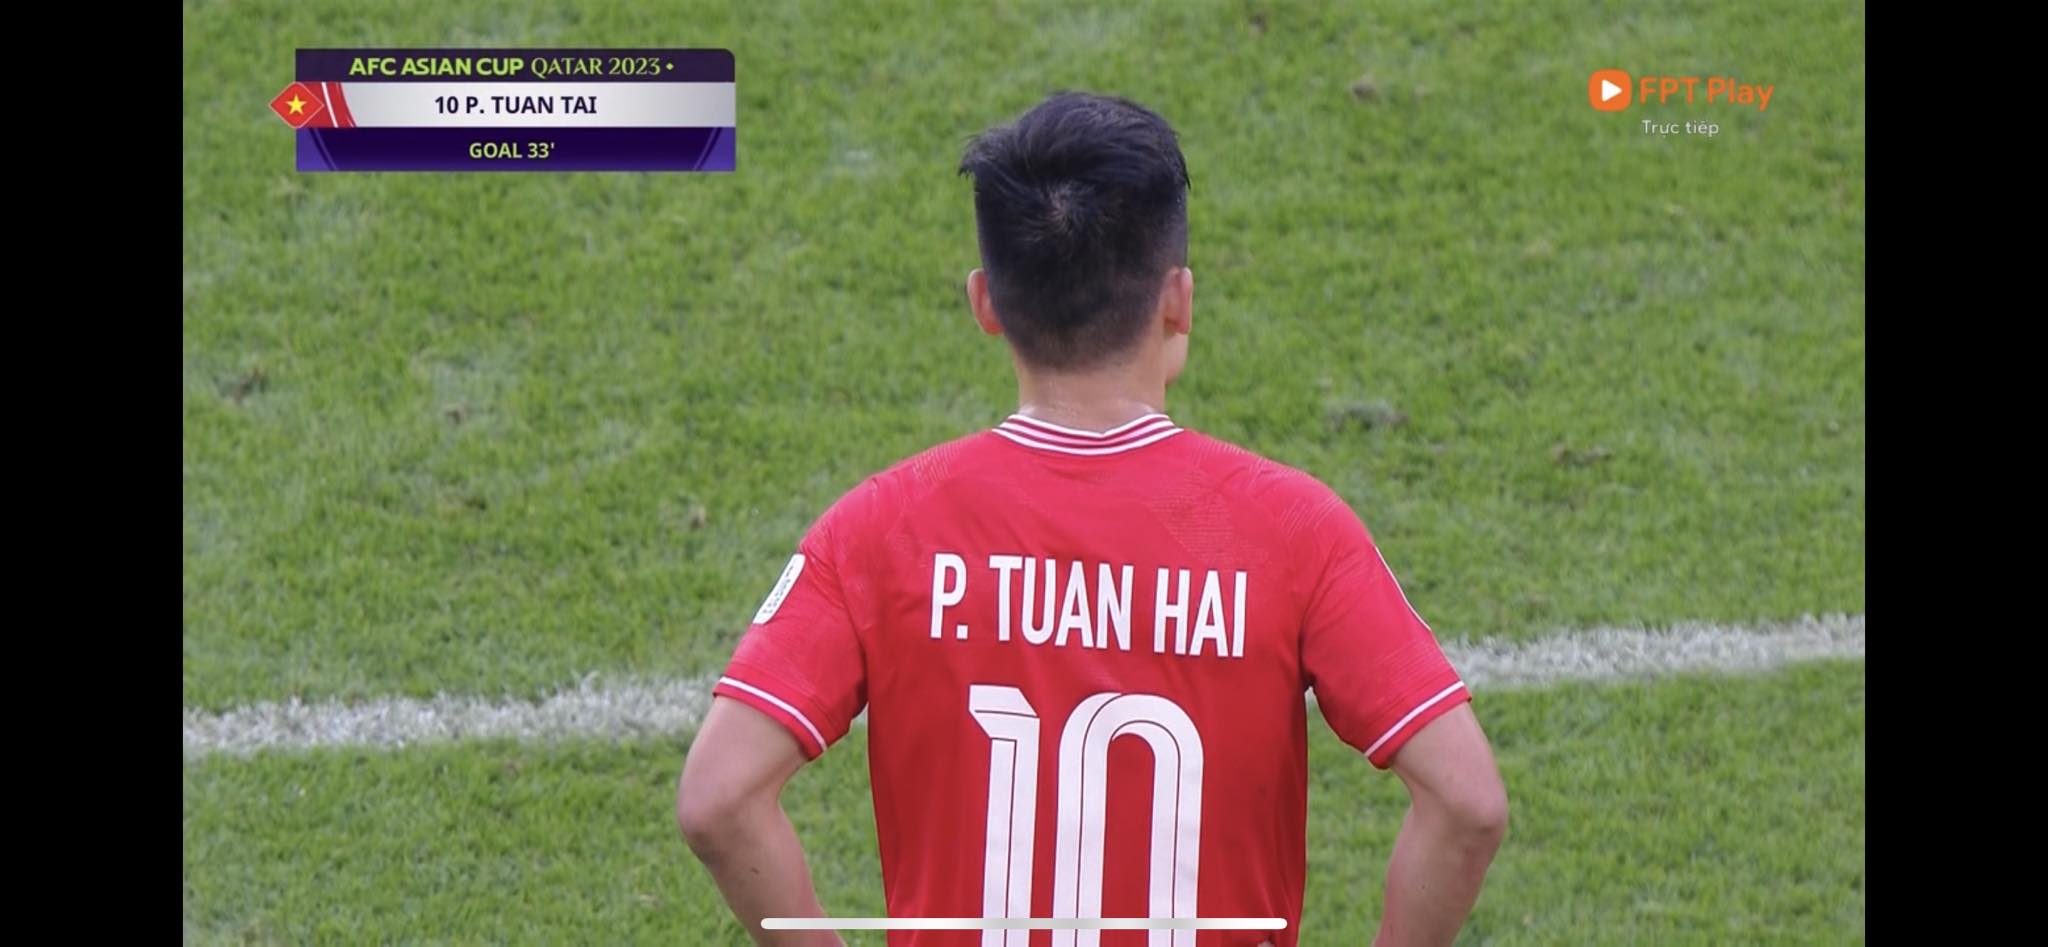 Tuấn Hải ghi bàn thắng thứ 2 cho tuyển Việt Nam. Ảnh cắt từ video 